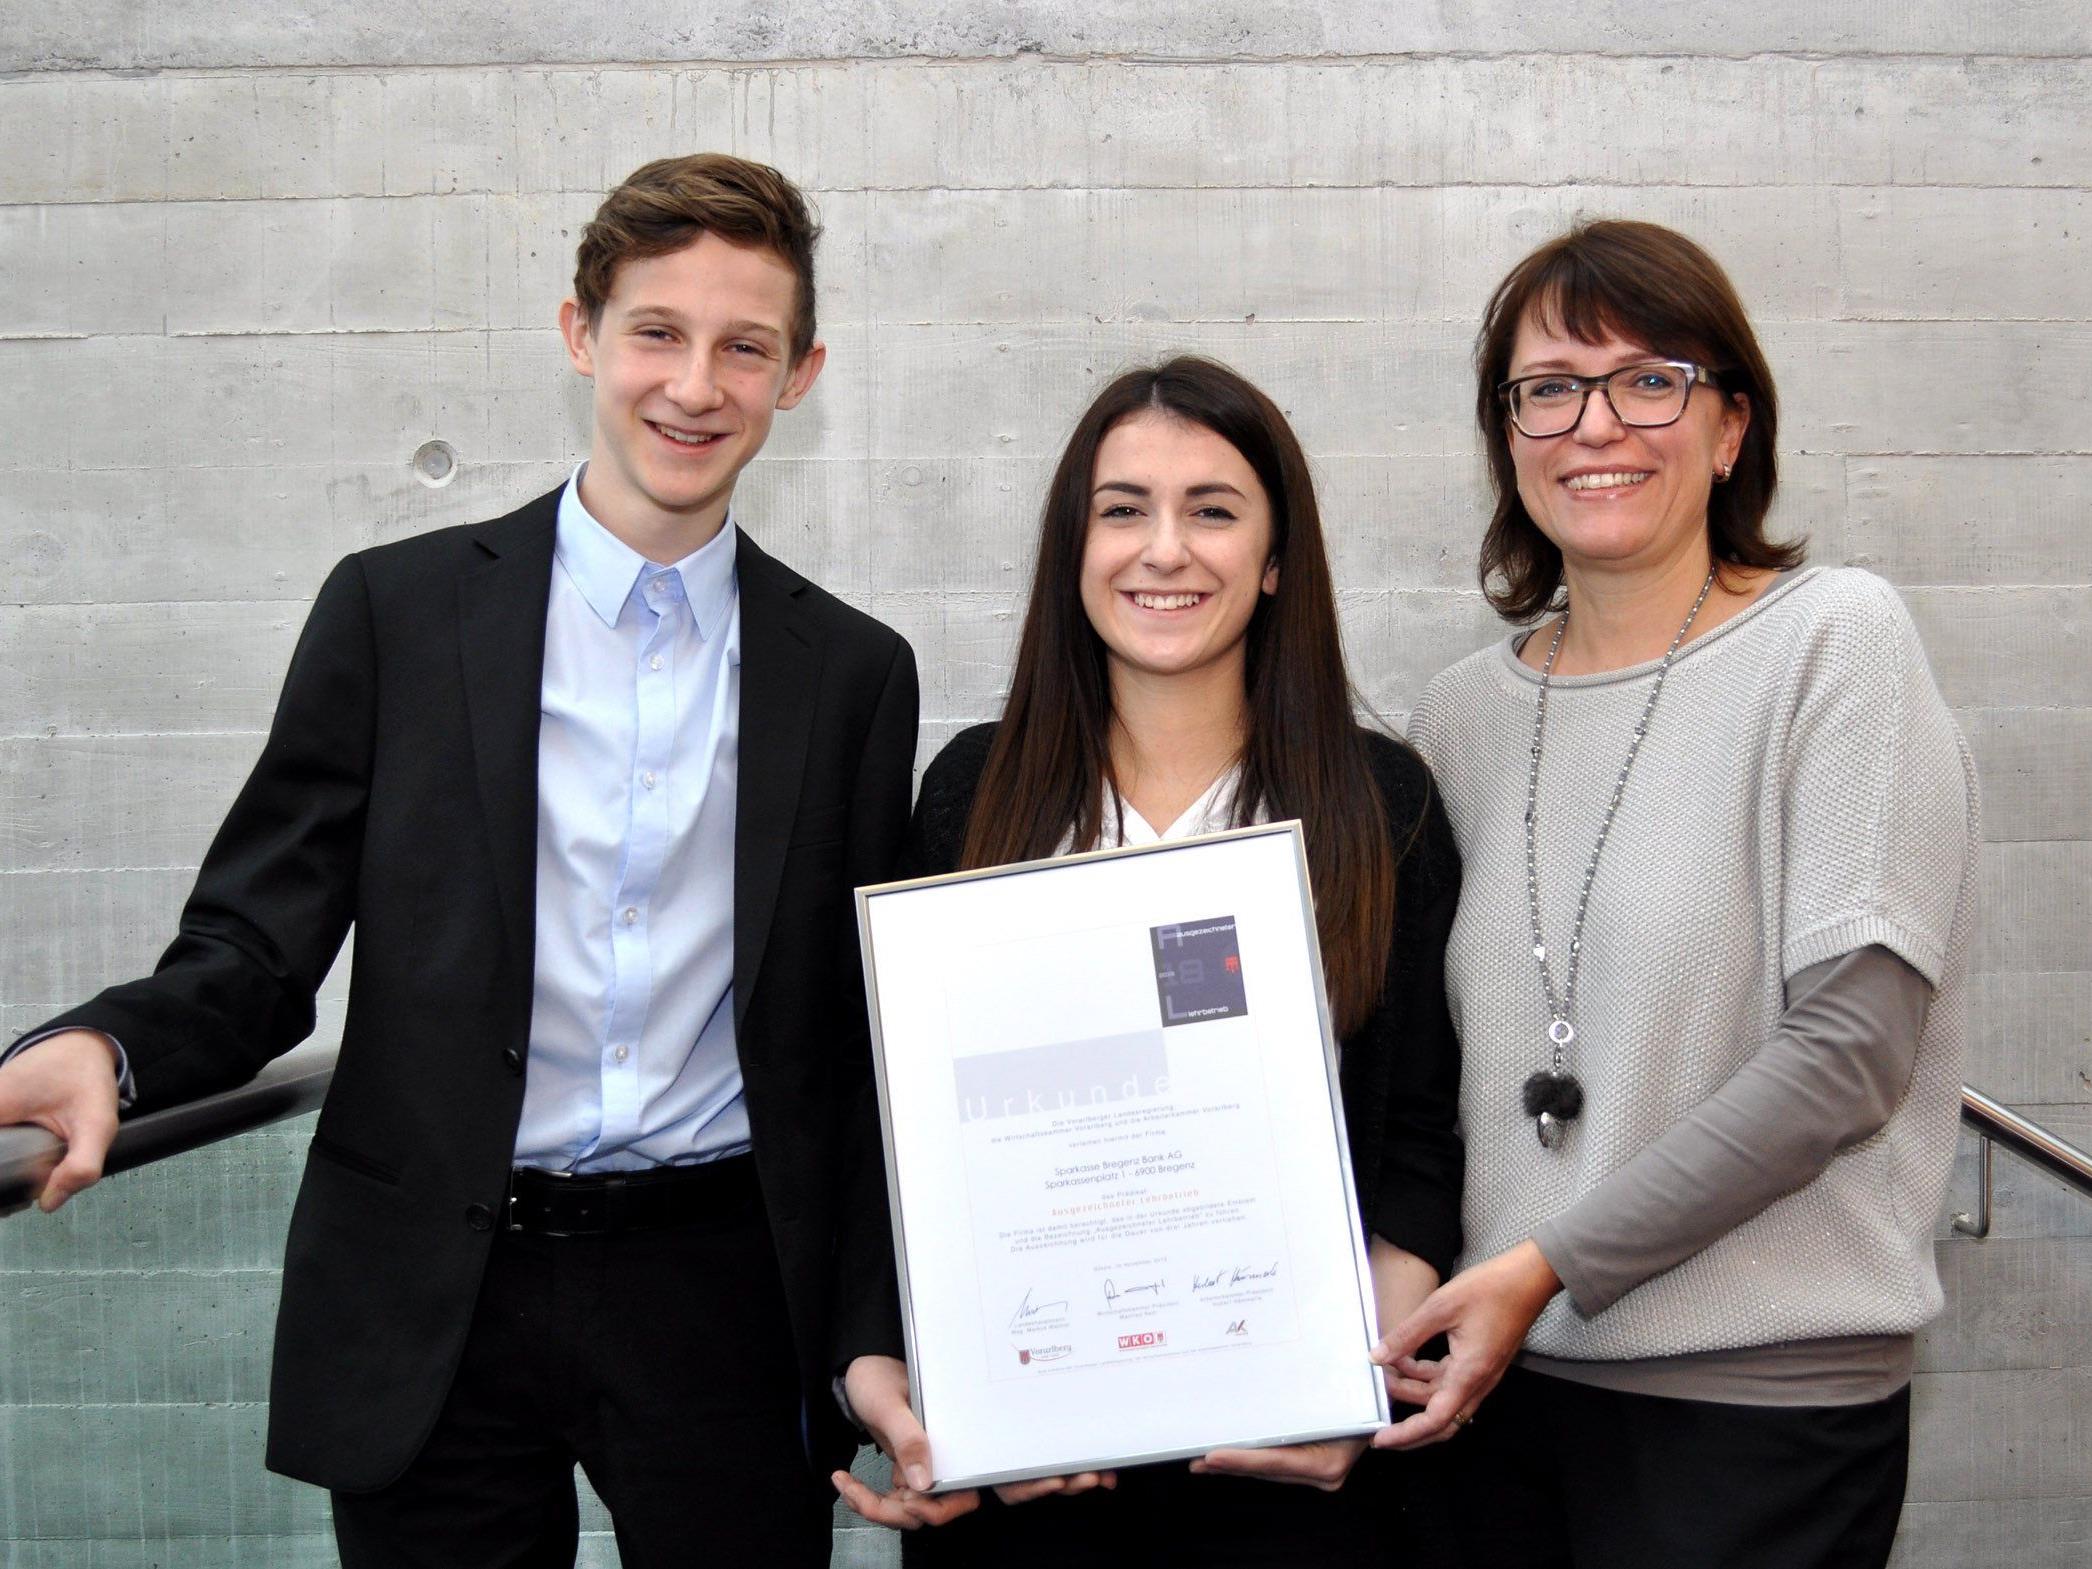 Morris und Feride, die beiden Lehrlinge der Sparkasse Bregenz, freuen sich gemeinsam mit Personalchefin Verena Depaoli über die neuerliche Auszeichnung.